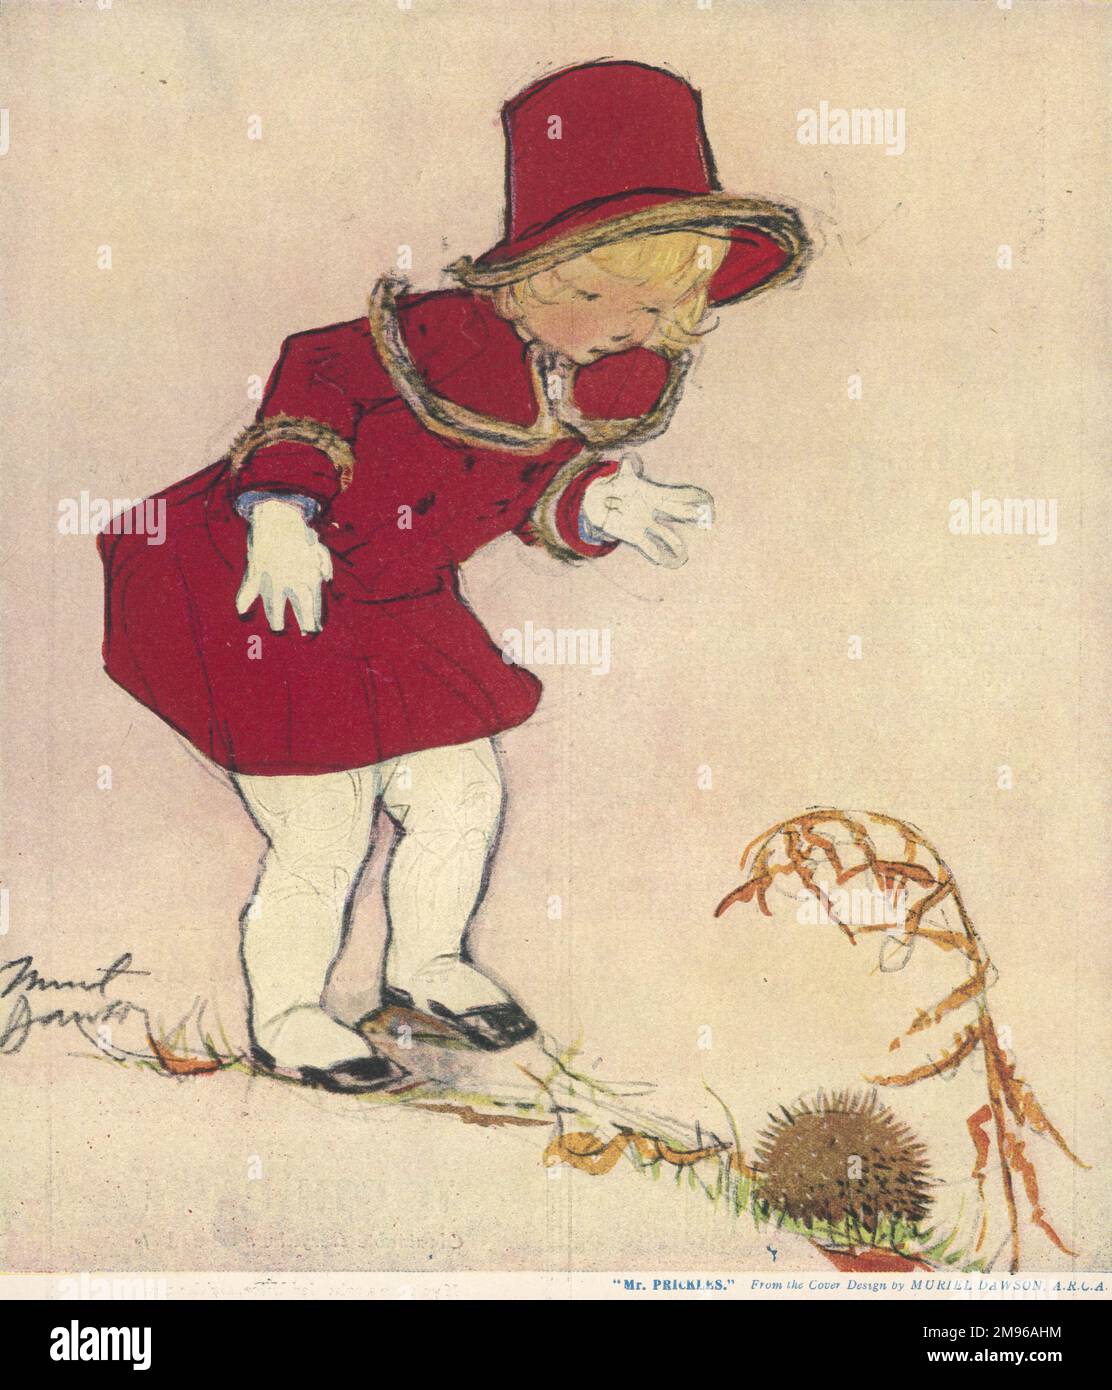 Une petite fille blonde douce portant un élégant manteau et un chapeau rouge assorti, vient sur un petit hérisson qui s'est enroulé vers le haut en une balle. Banque D'Images